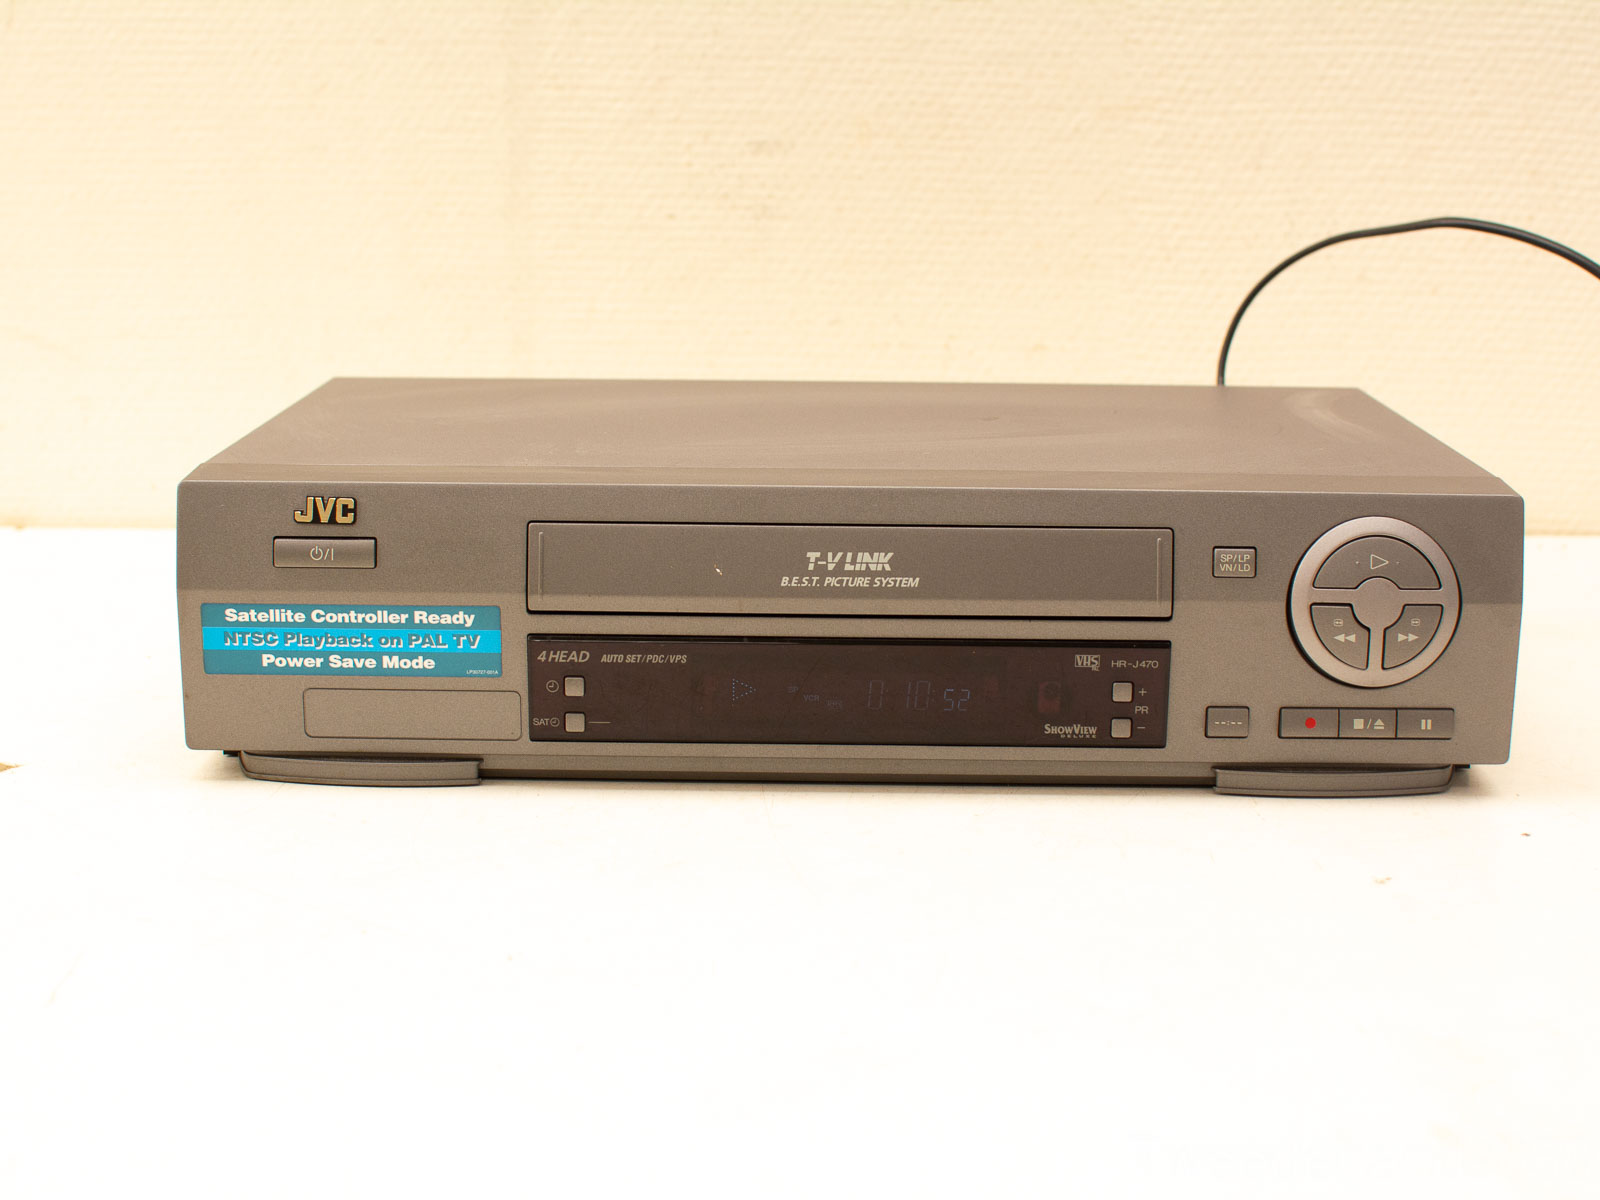 JVG video cassette recorder 31008